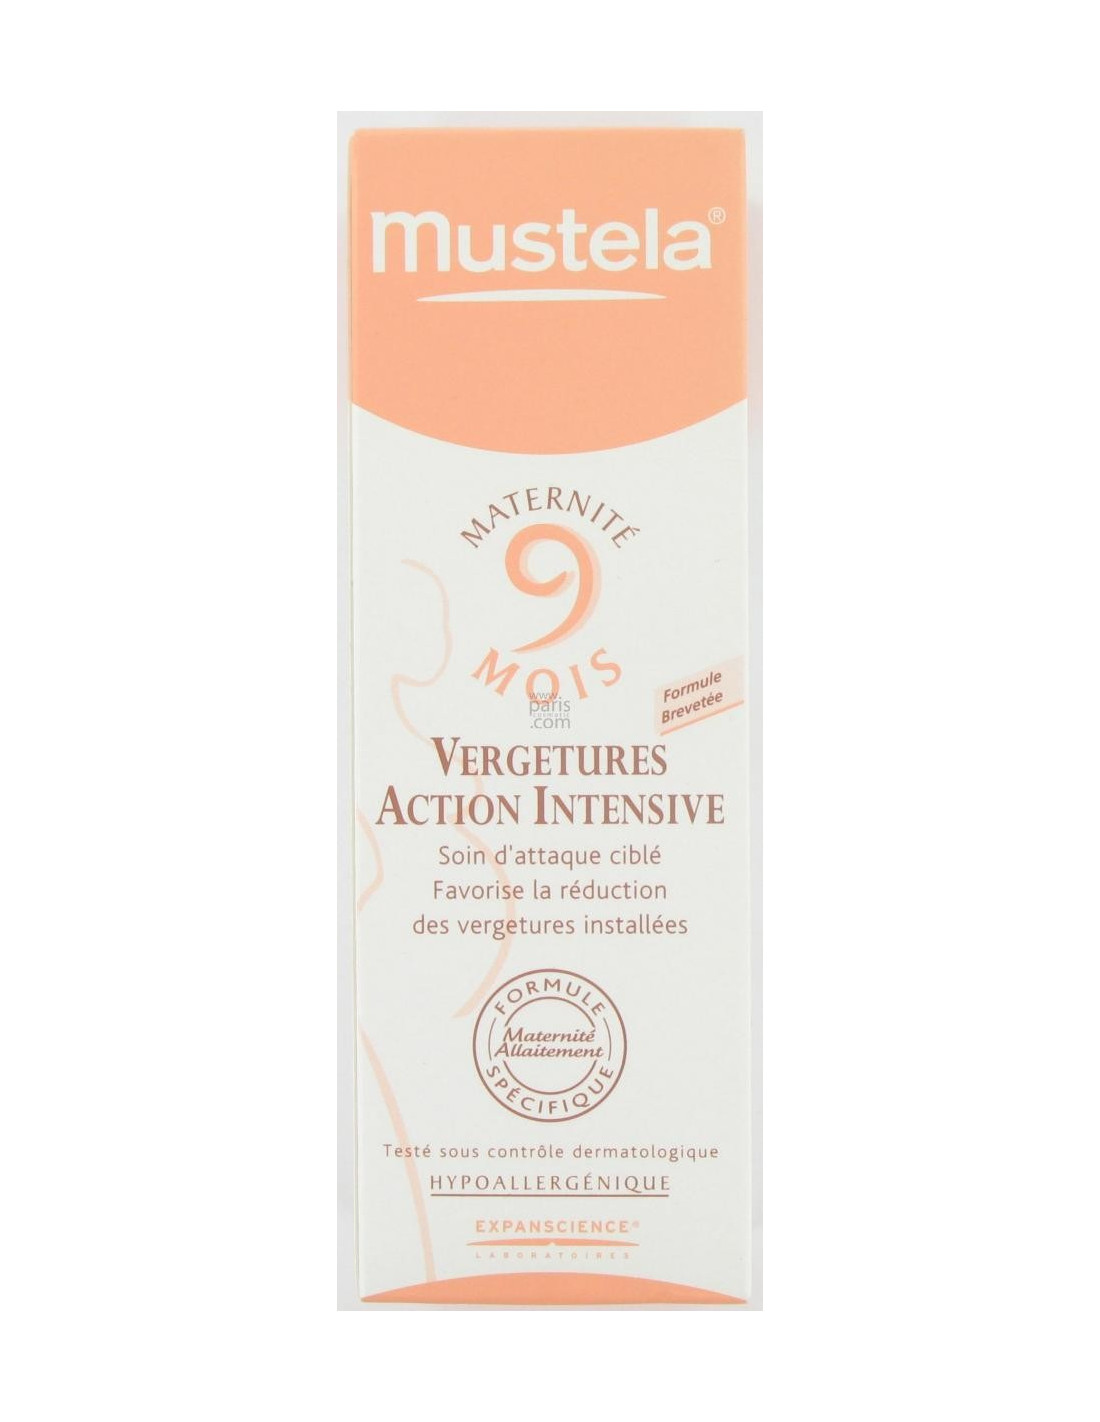 Crème Vergetures Double Action Sans Parfum MUSTELA 9 MOIS : Comparateur,  Avis, Prix